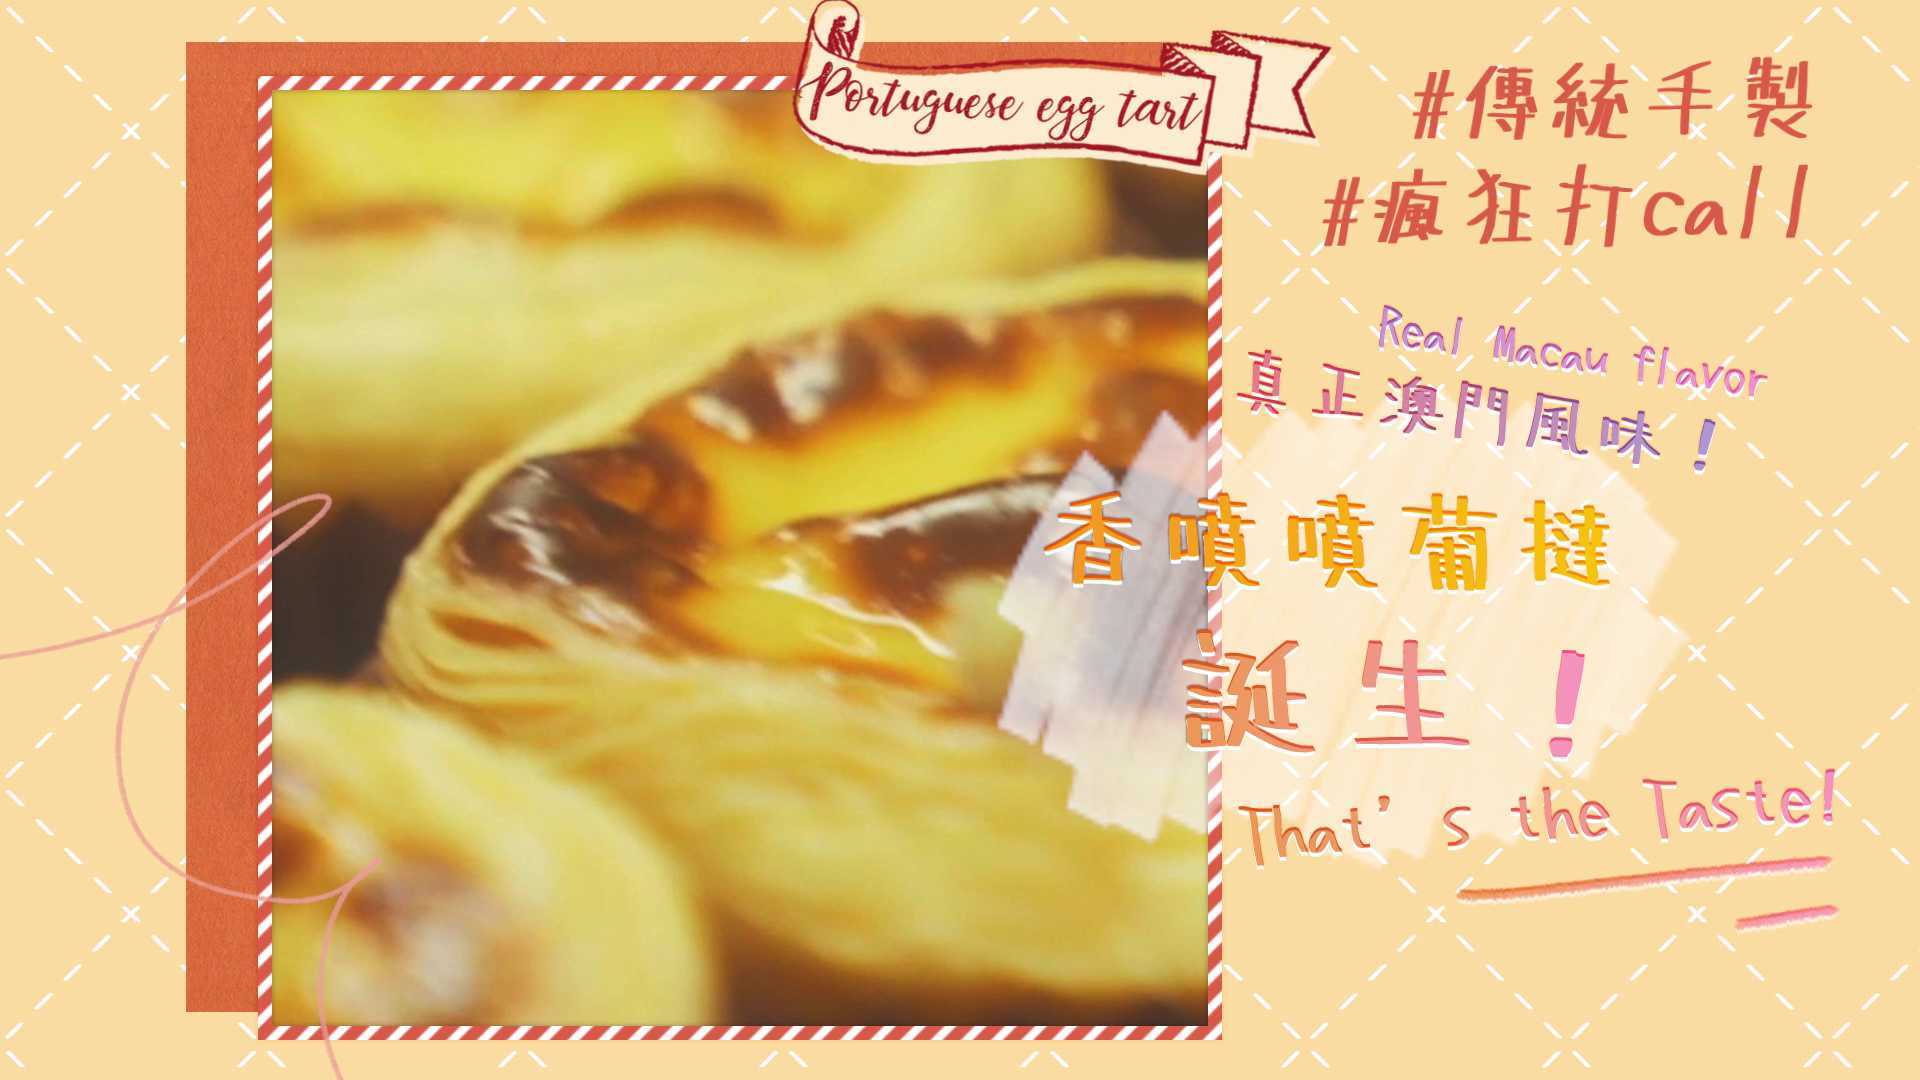 澳門葡式美食 - 沙莉蛋撻宣傳片